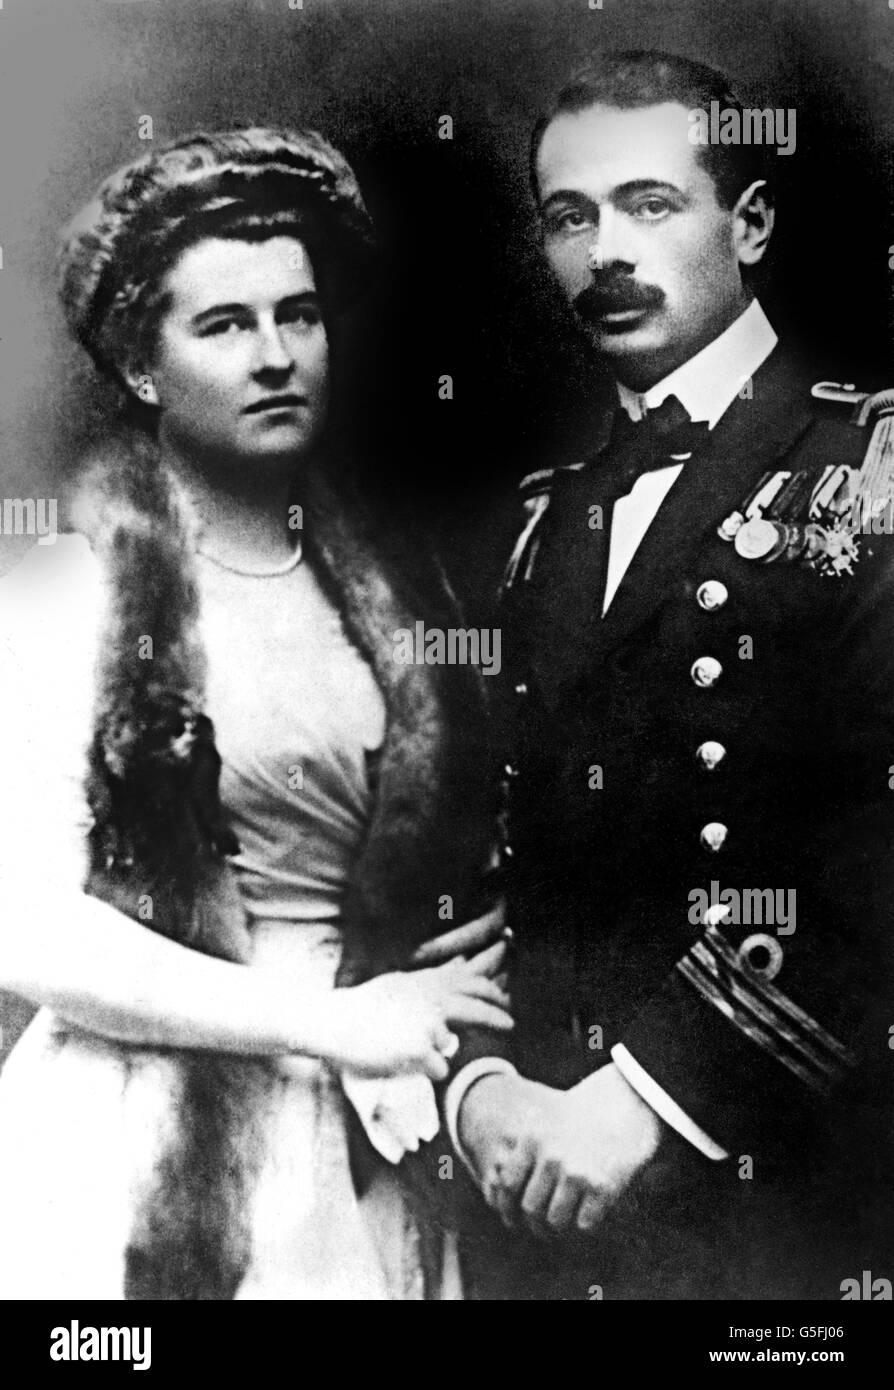 Georg Ritter von Trapp, commandant du sous-marin autrichien U5, avec la fiancée Agathe Whitehead. L'histoire de sa famille a inspiré la comédie musicale le son de la musique. Banque D'Images